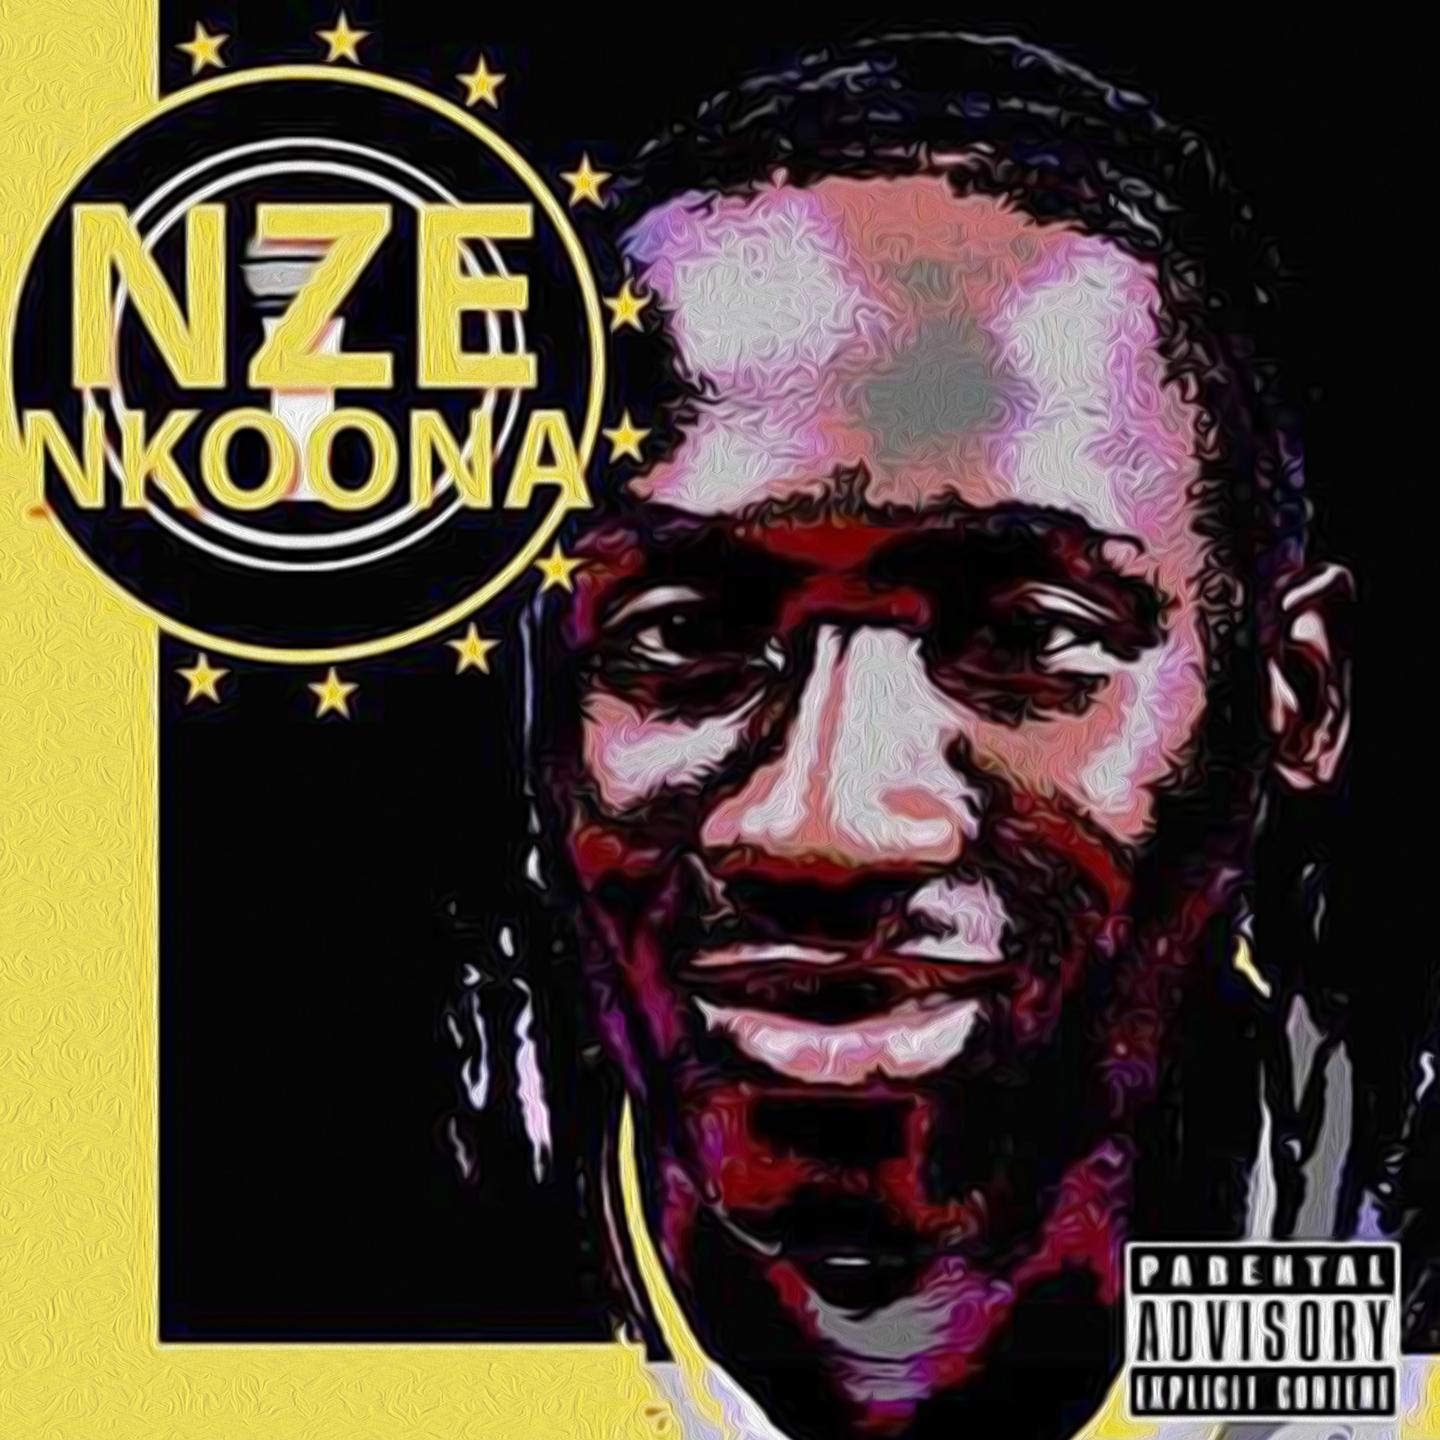 Nze Nkoona